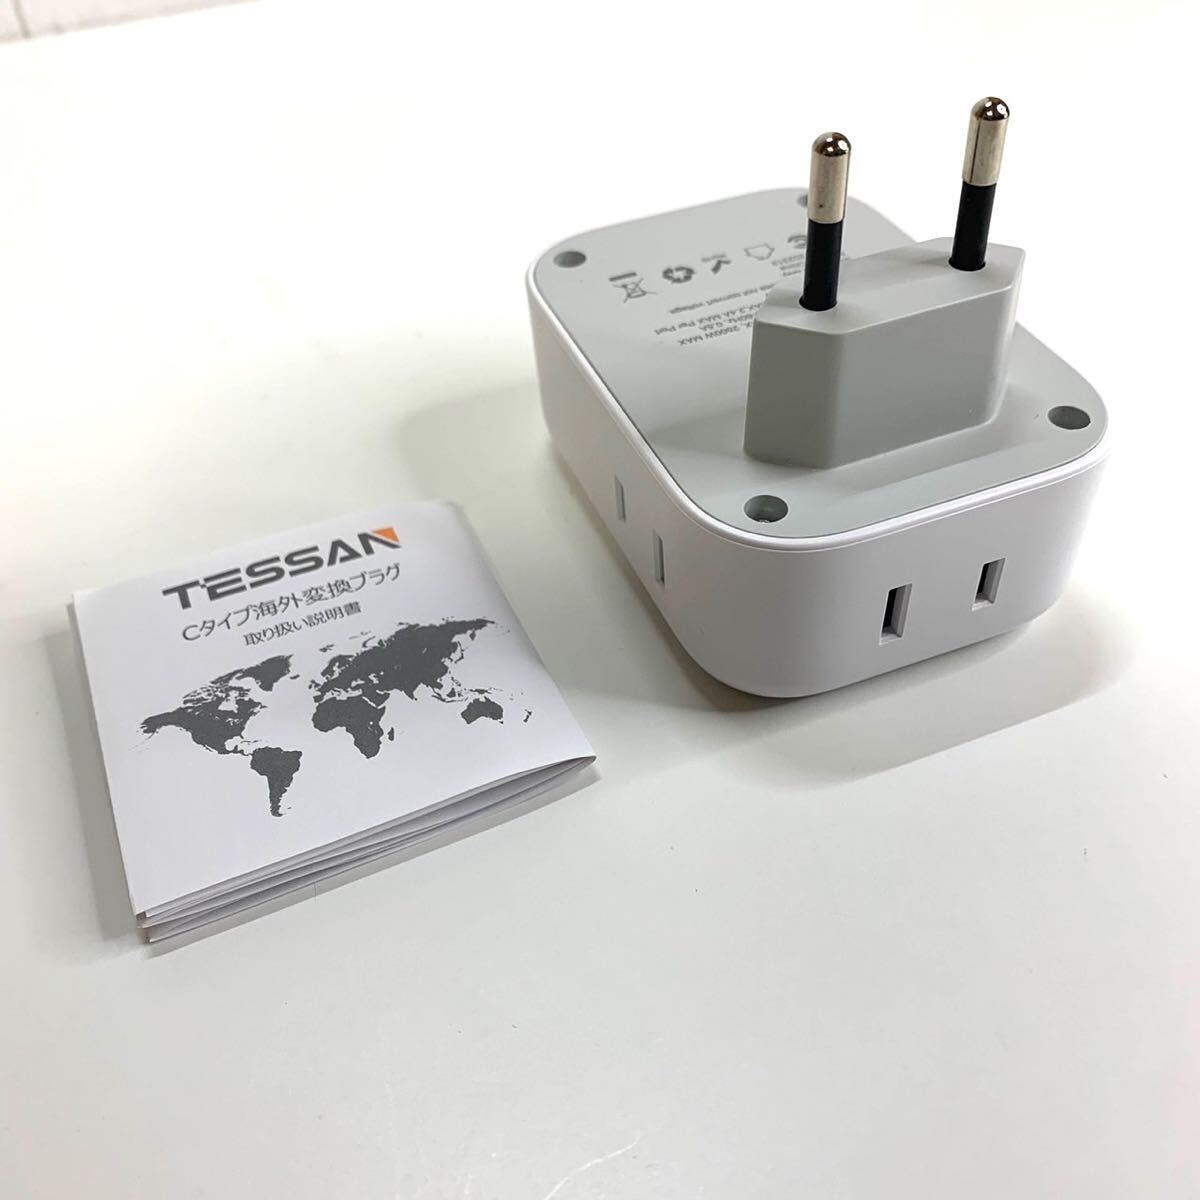 【送料無料】TESSAN 変換プラグ Cタイプ 海外旅行用 変換器 変換アダプター コンセント4個AC差込口 3USBポート付き 韓国/ヨーロッパ(A185)